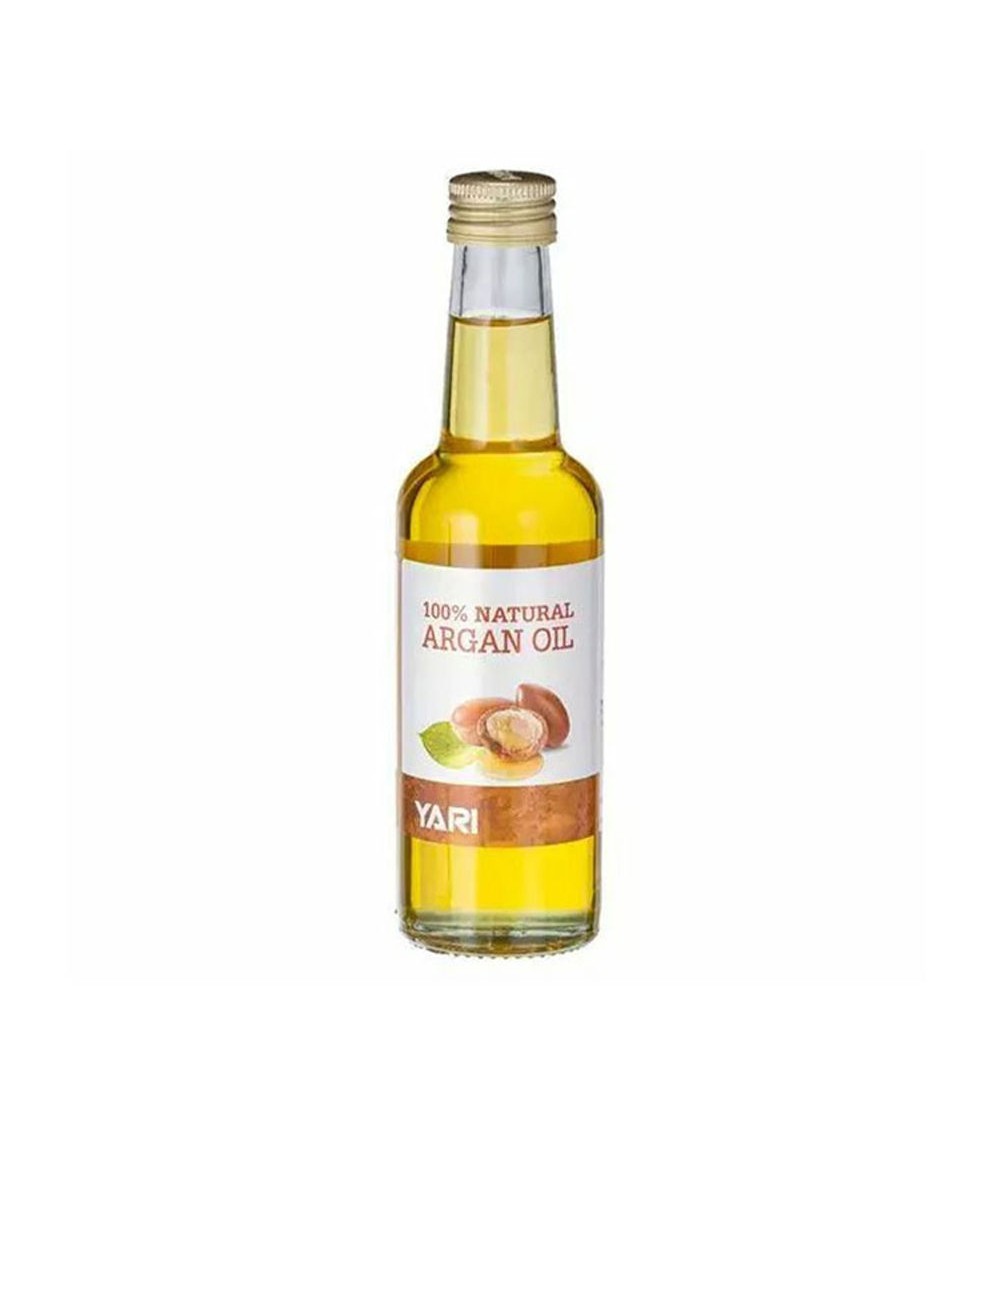 100% NATURAL argan oil 250 ml